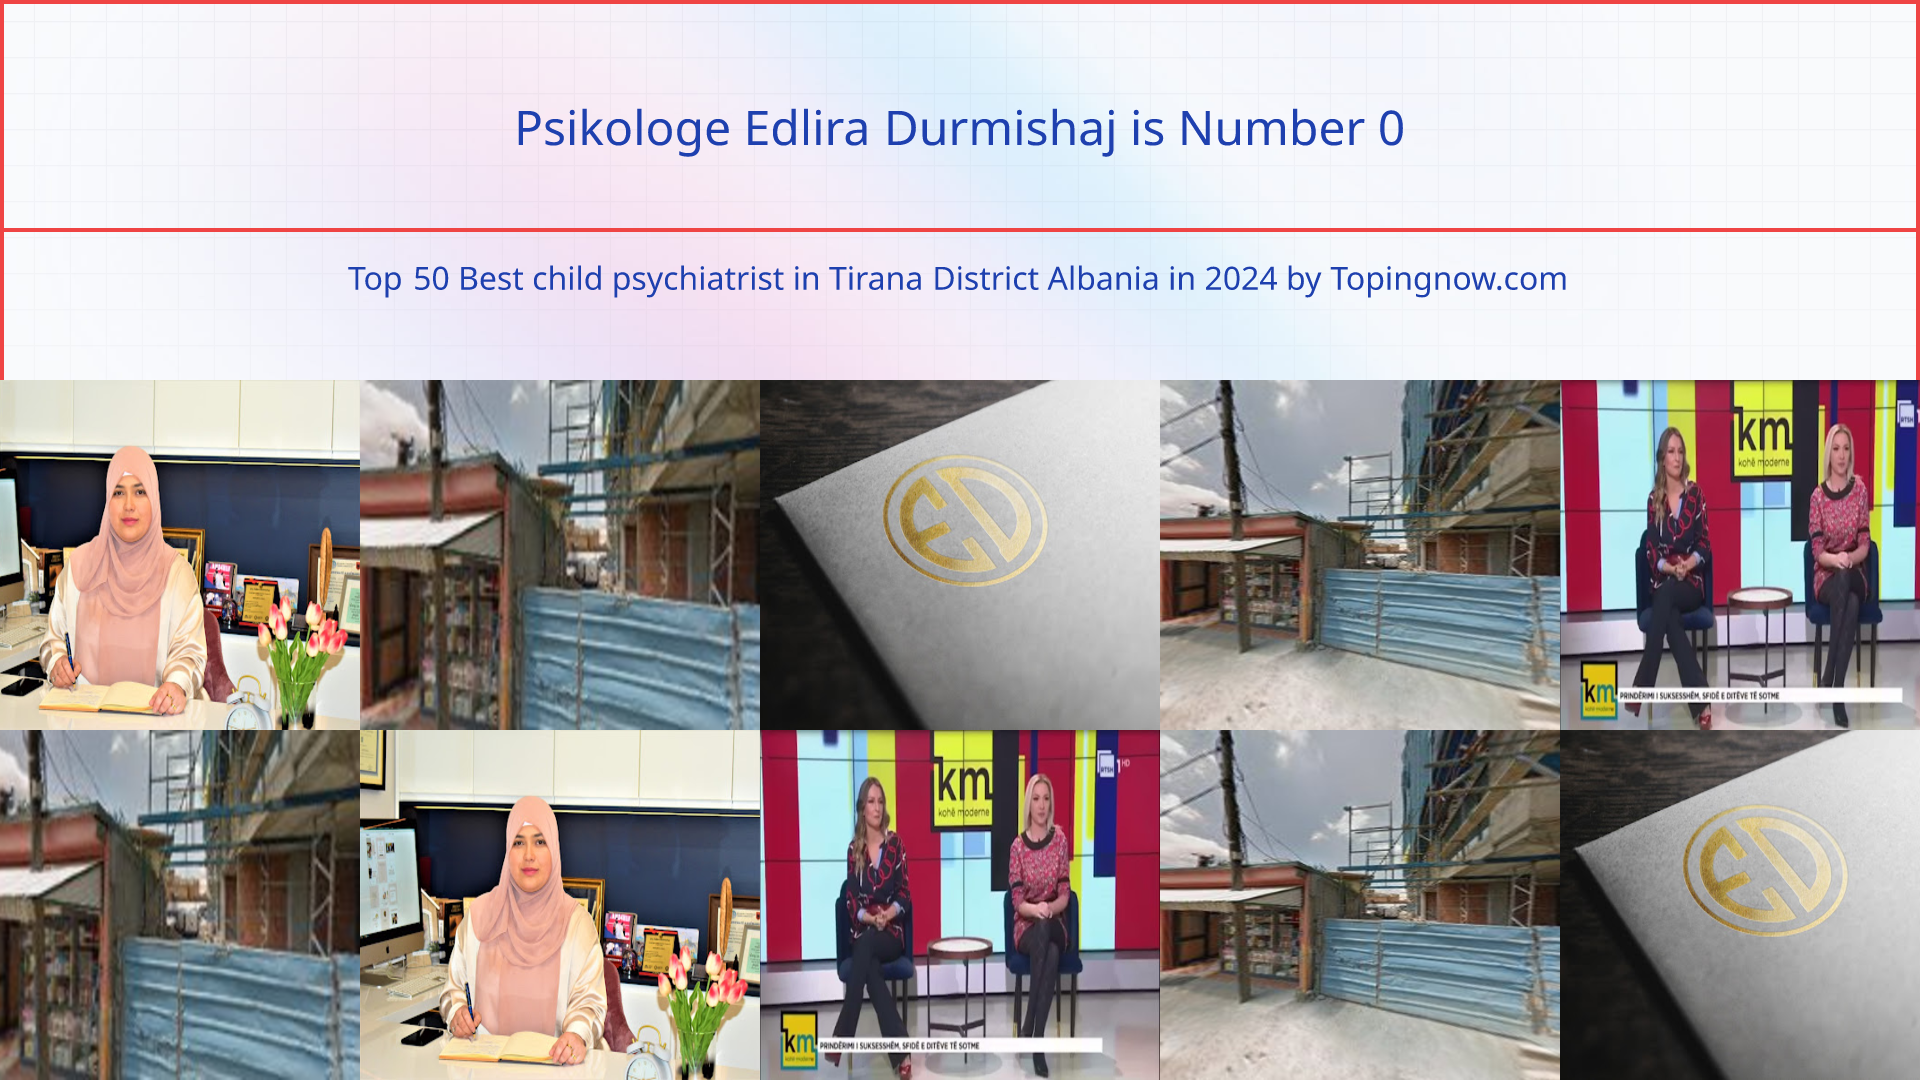 Psikologe Edlira Durmishaj: Top 50 Best child psychiatrist in Tirana District Albania in 2024